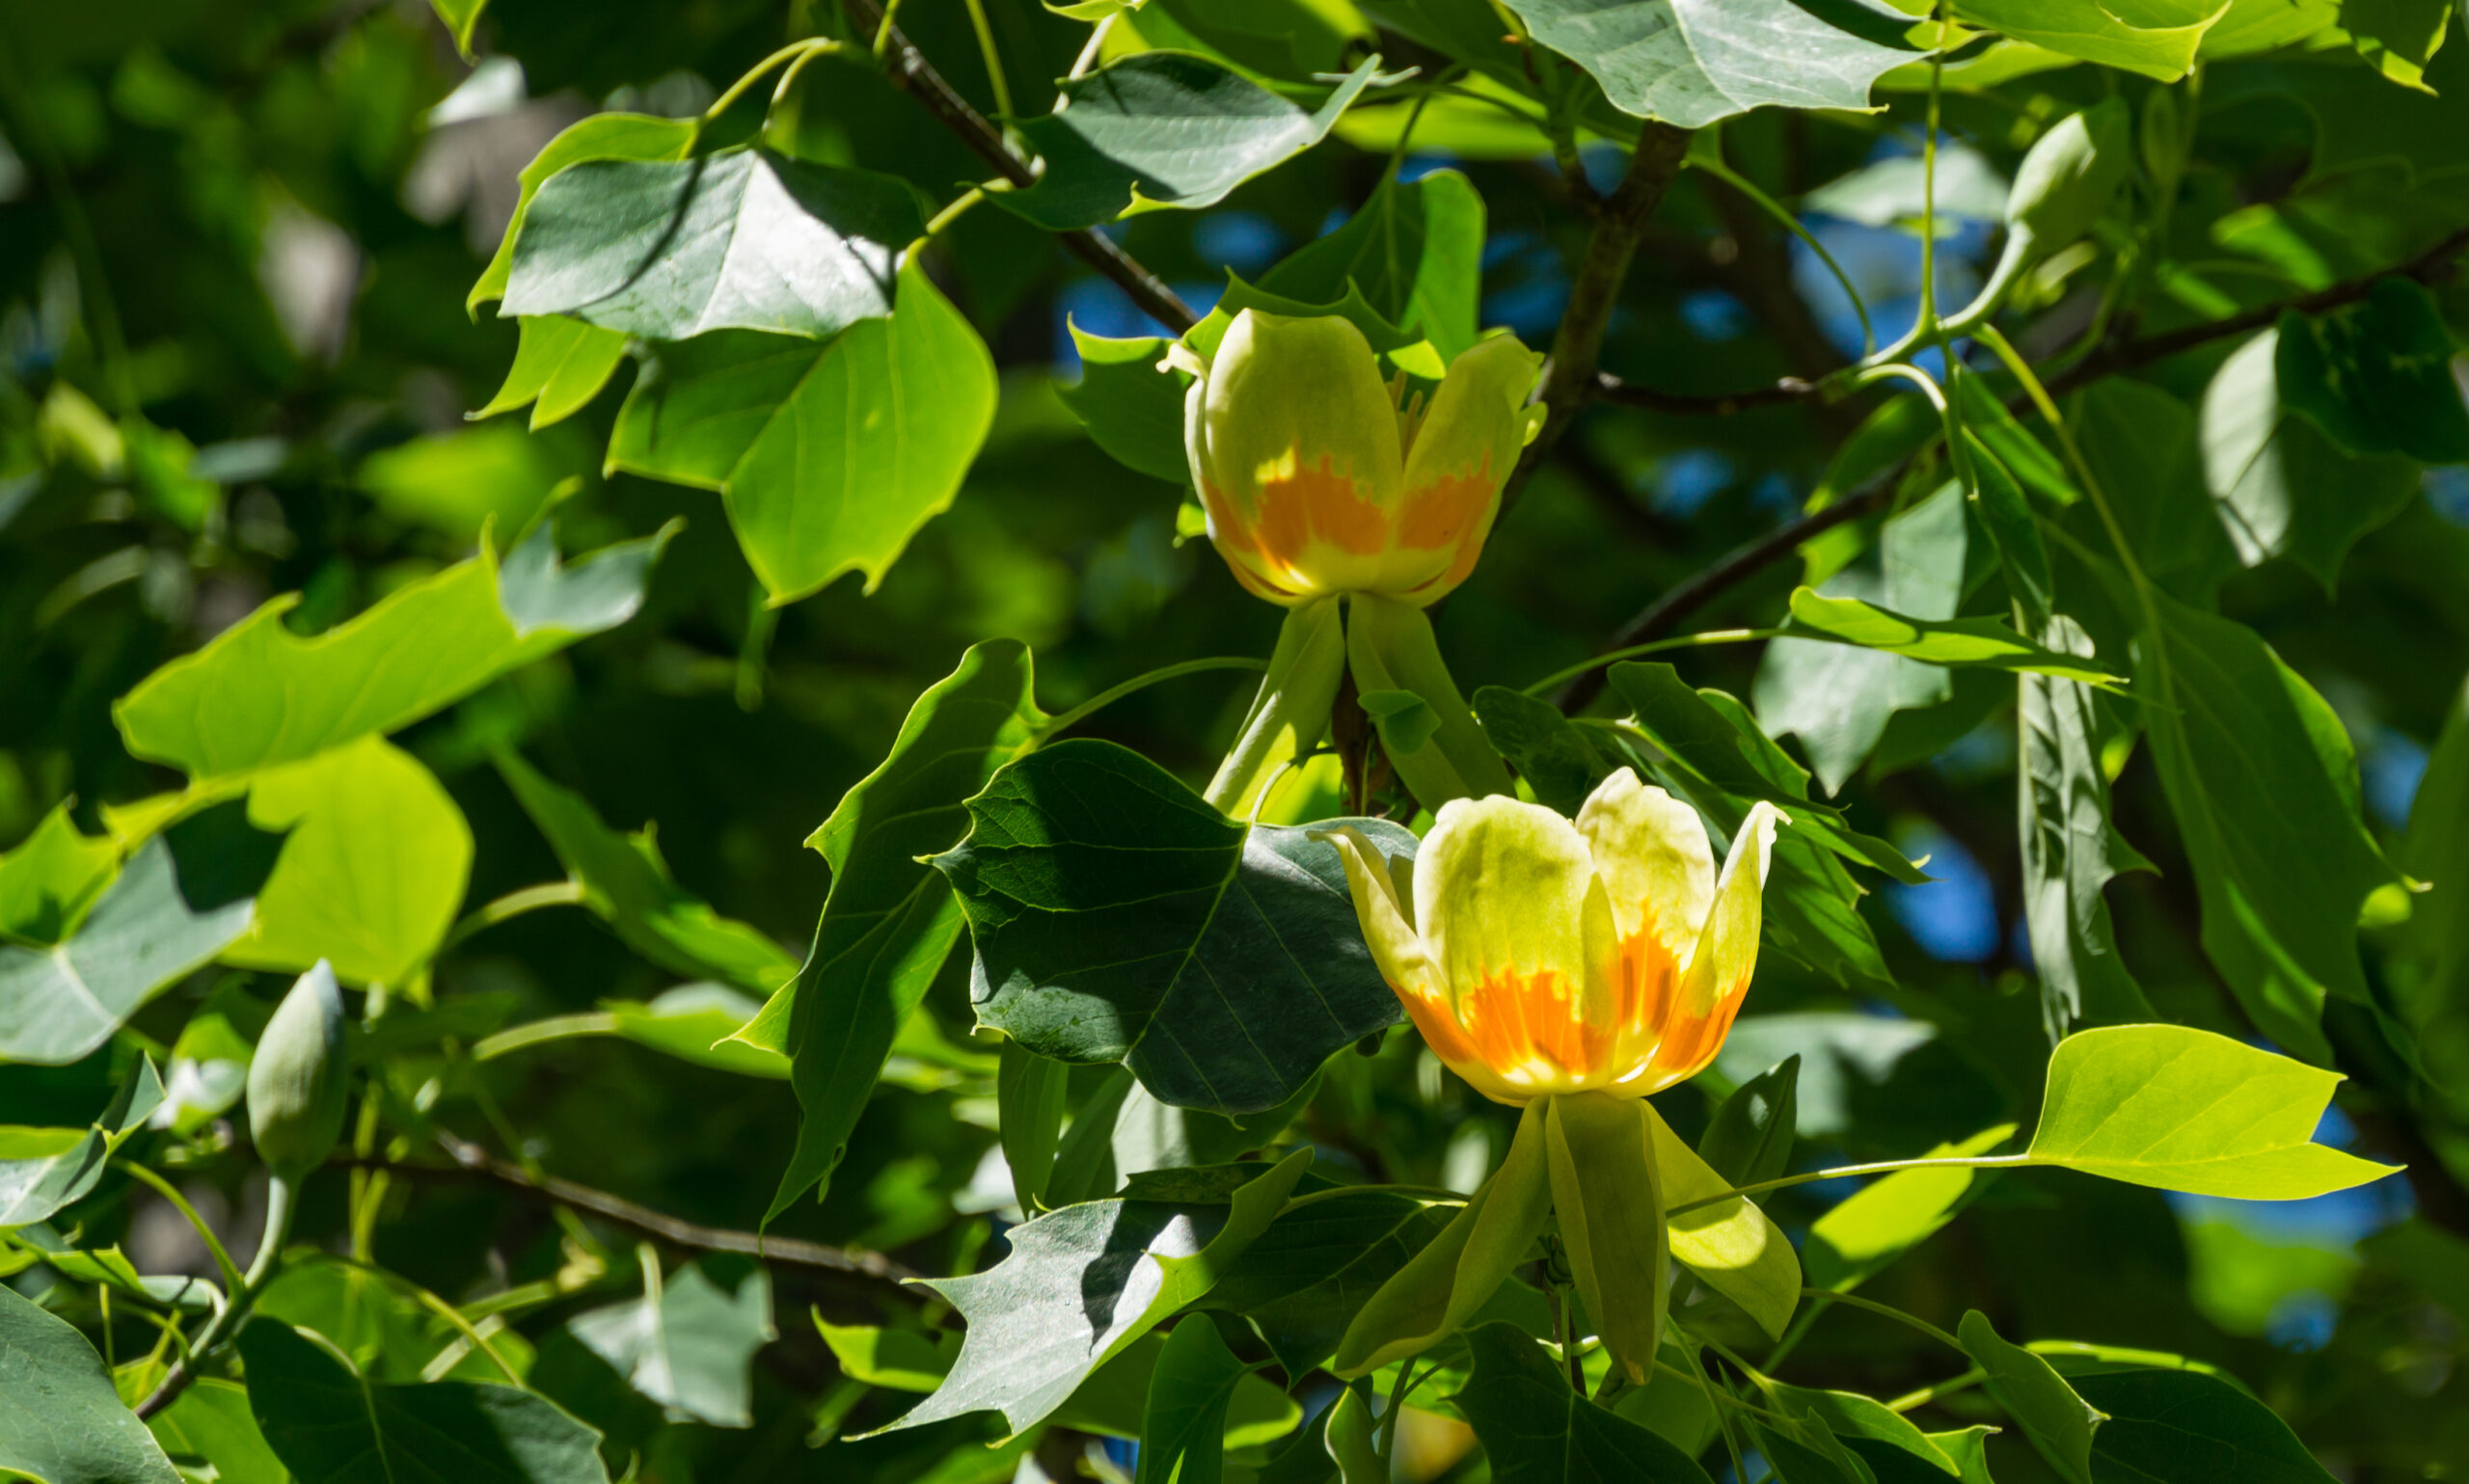 Lenteplant in de kijker: De tulpenboom